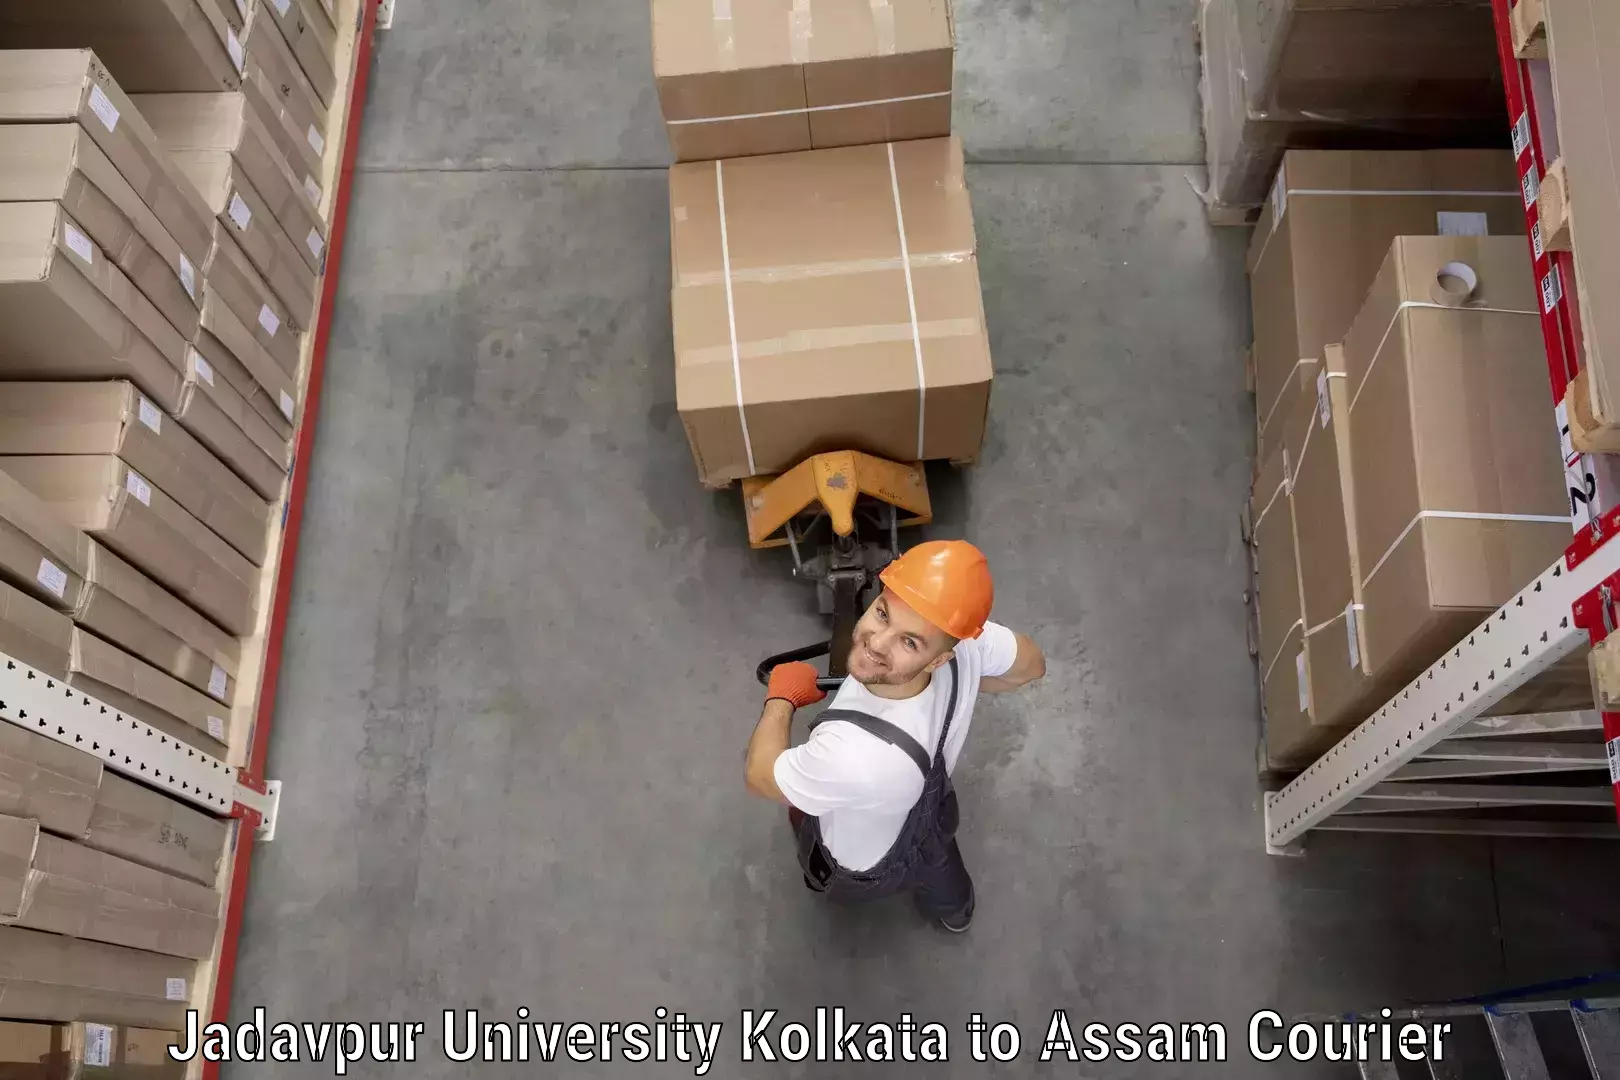 Innovative shipping solutions Jadavpur University Kolkata to Assam